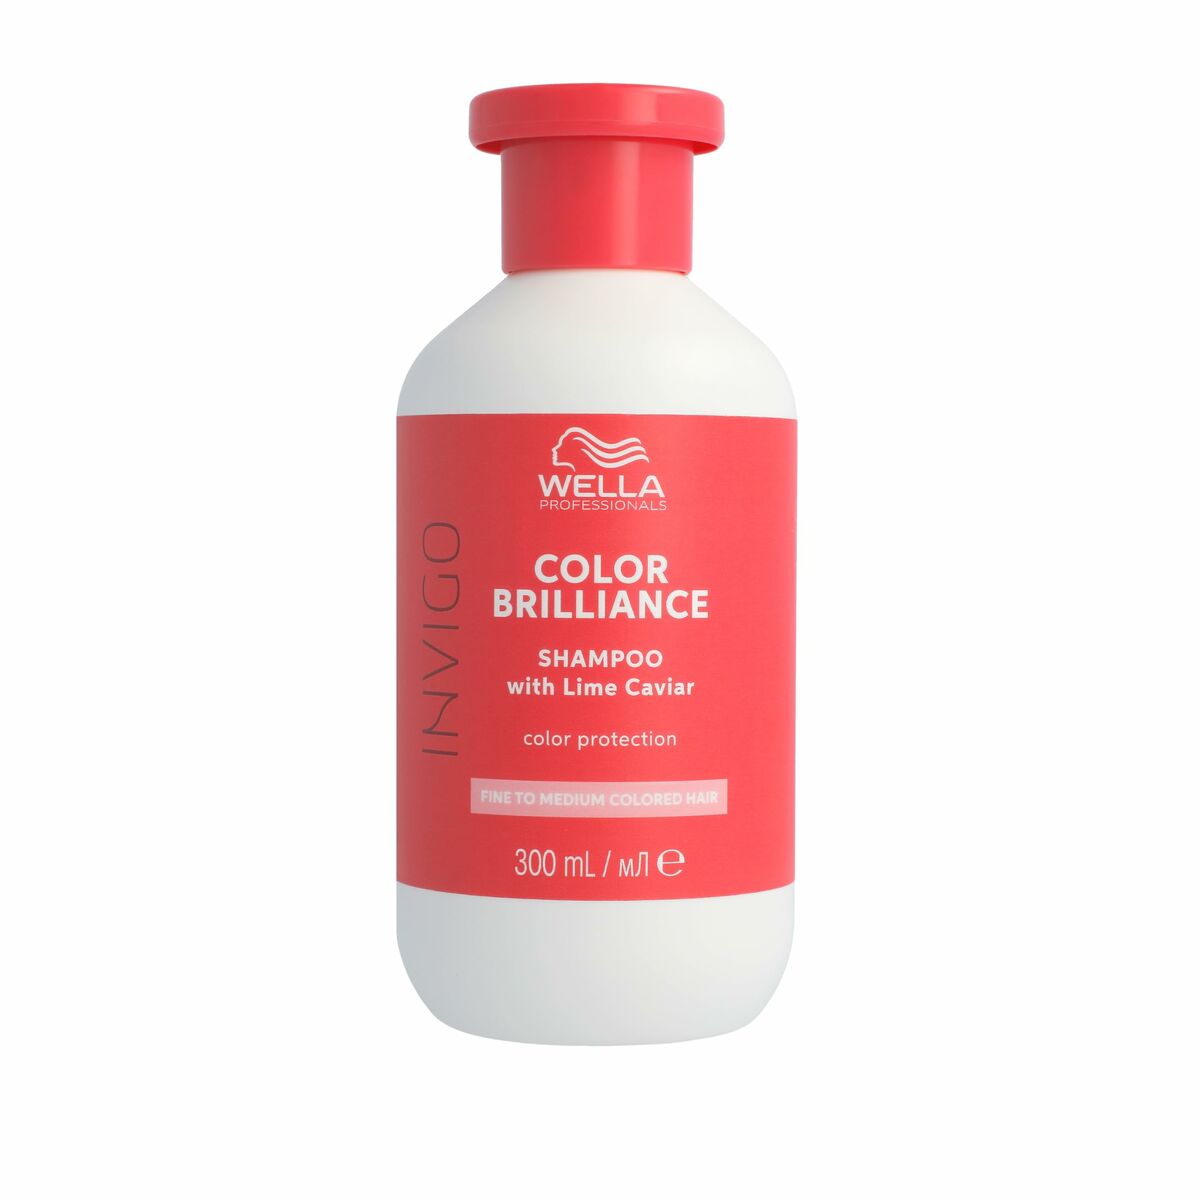 Shampoo Rivitalizzante per il Colore Wella 300 ml Capelli Colorati Capelli sottili